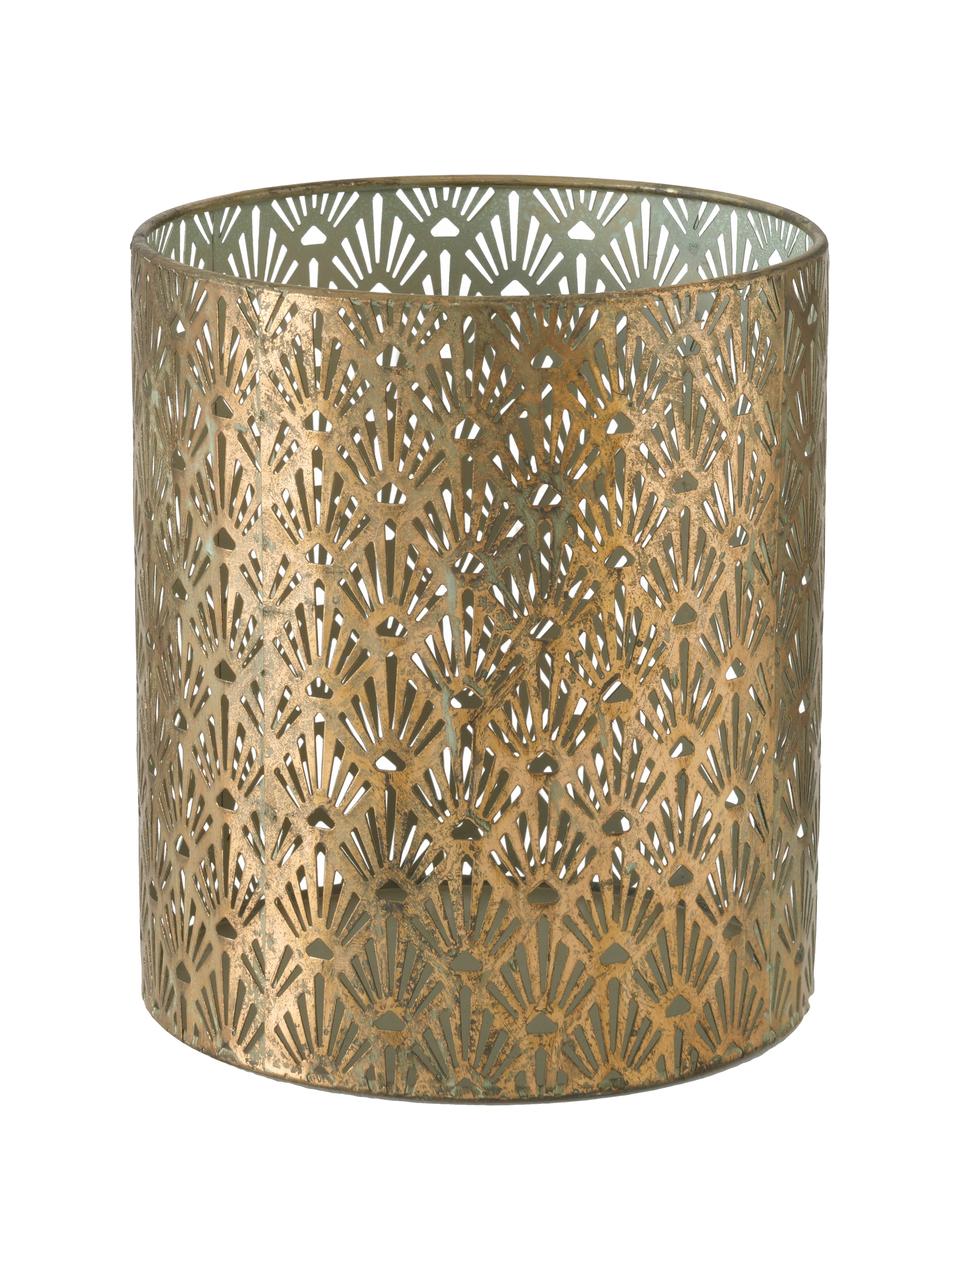 Grosses handgefertigtes Windlicht-Set Marifa aus Metall, 3-tlg., Metall, lackiert, Goldfarben, Set mit verschiedenen Grössen